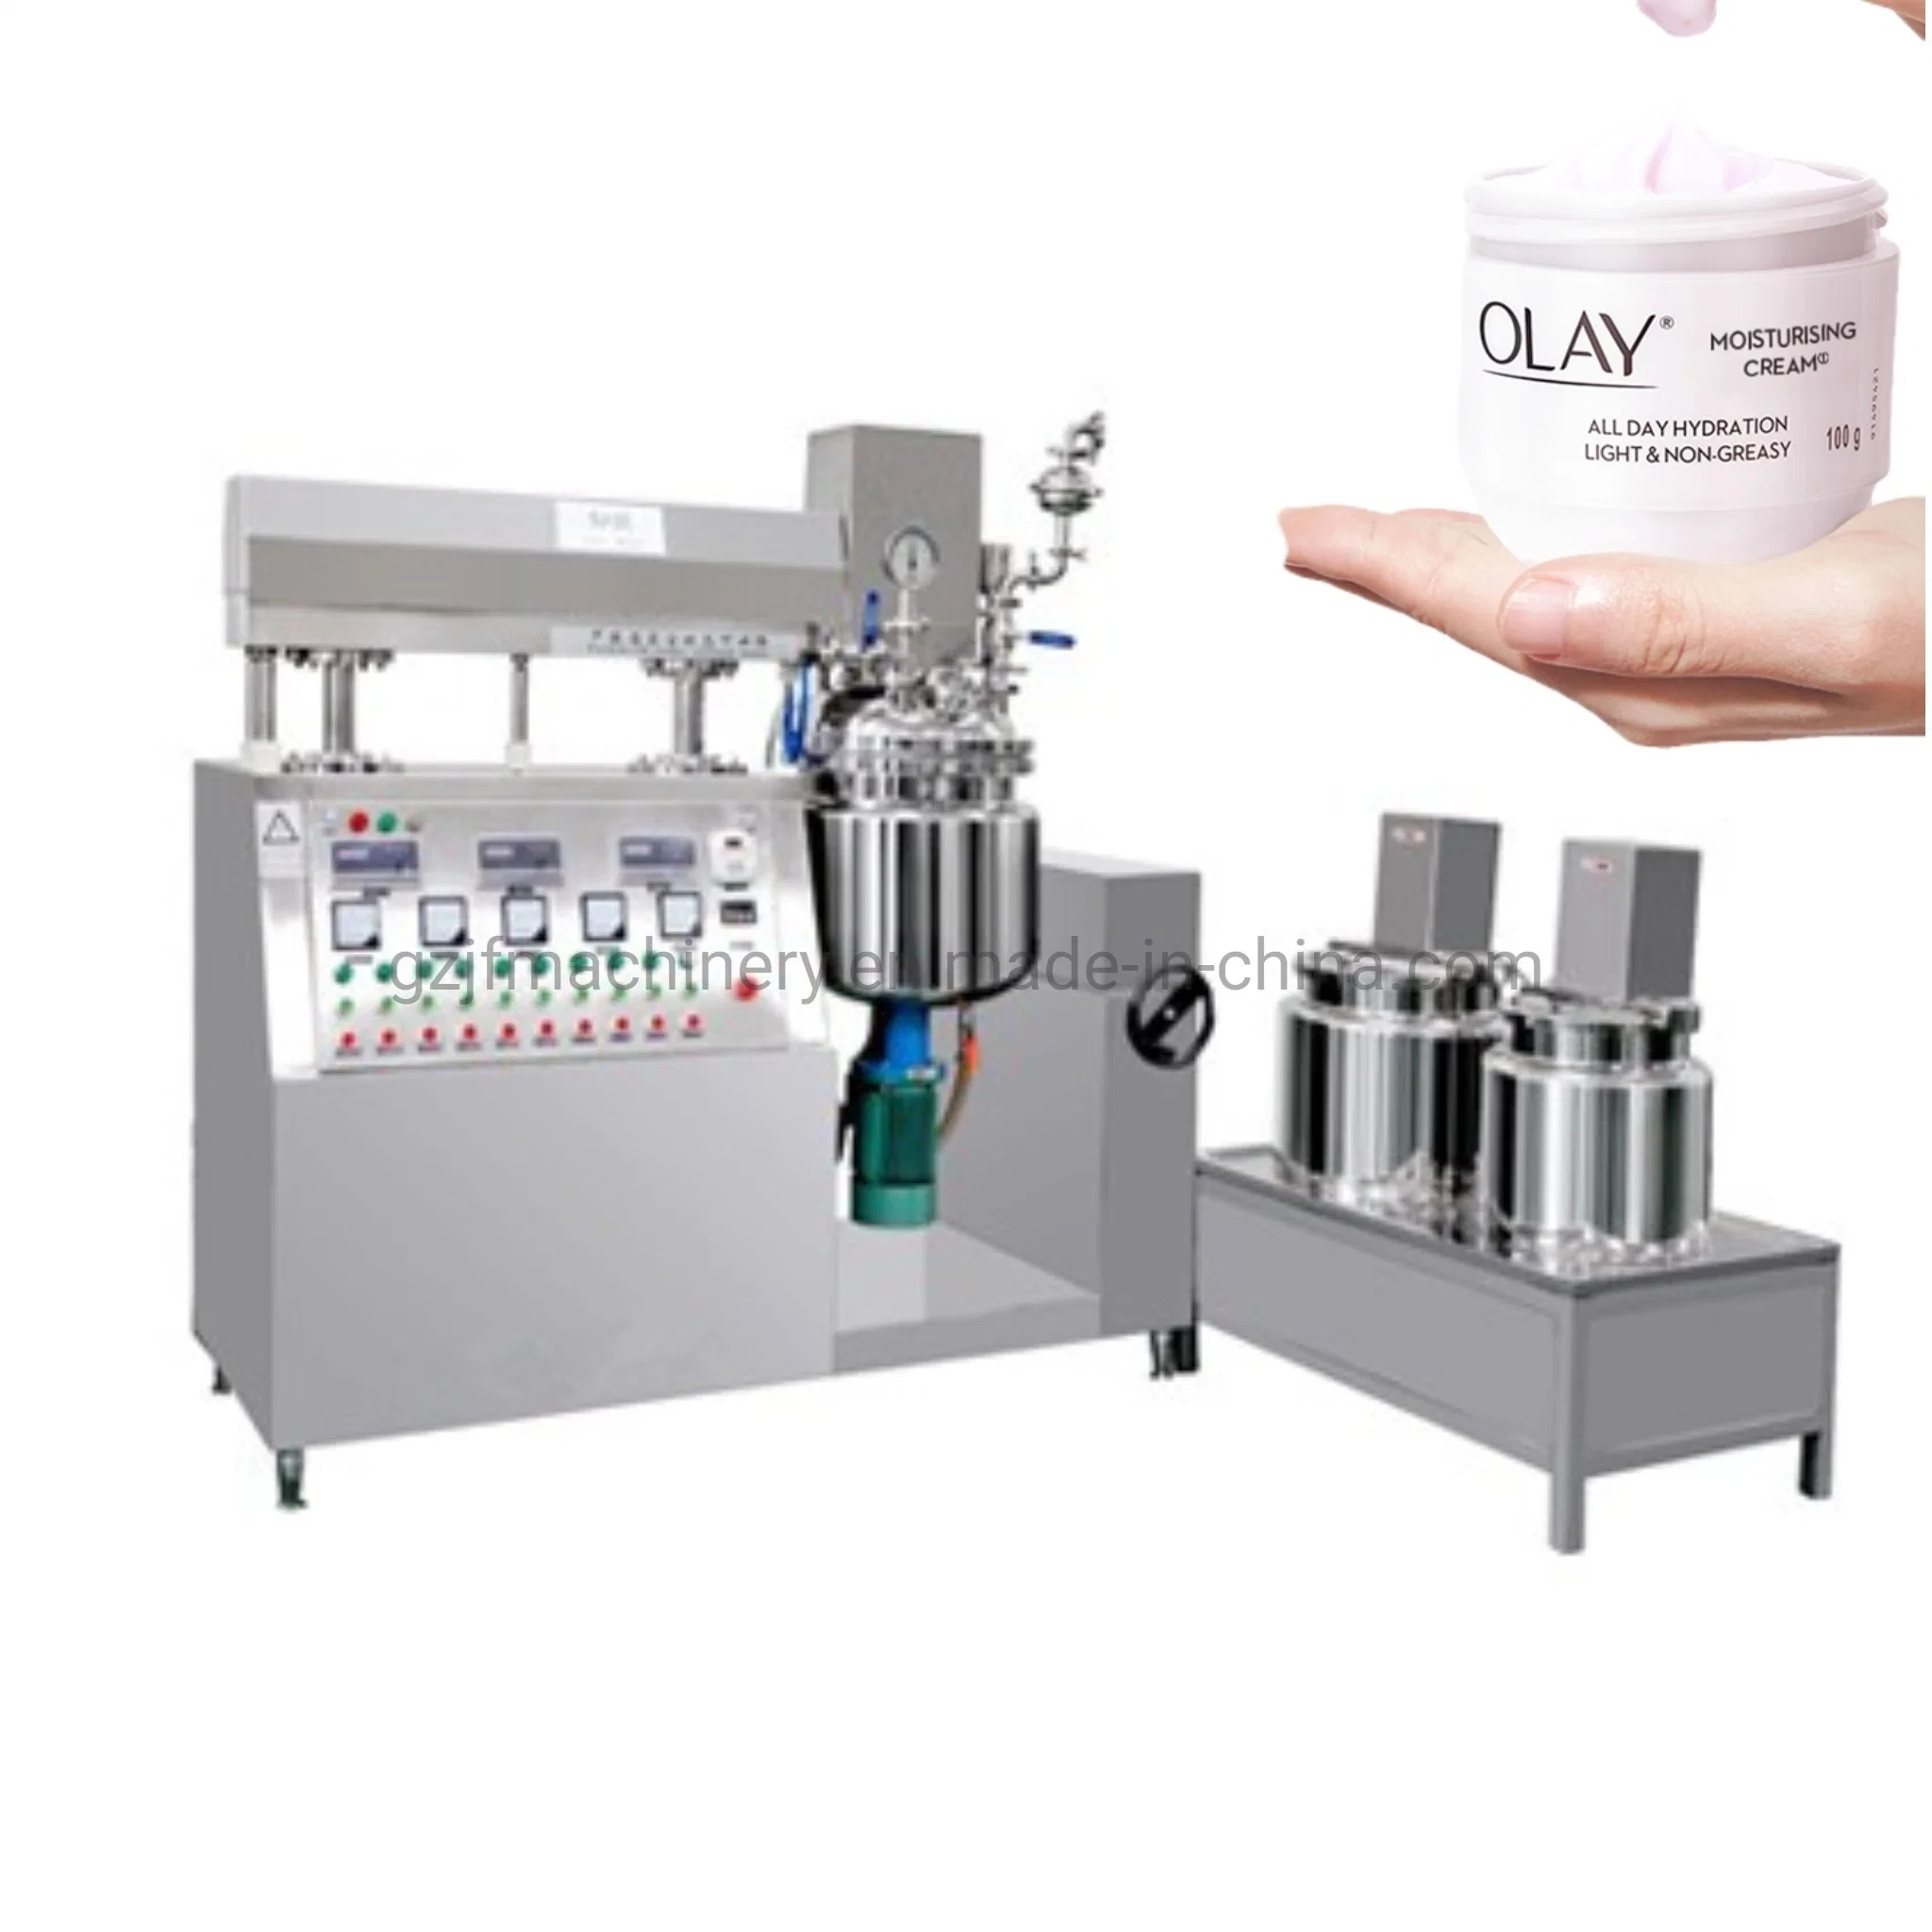 Loción desinfectante de manos de alta calidad elevación hidráulica emulsión cosmética al vacío Máquina mezcladora